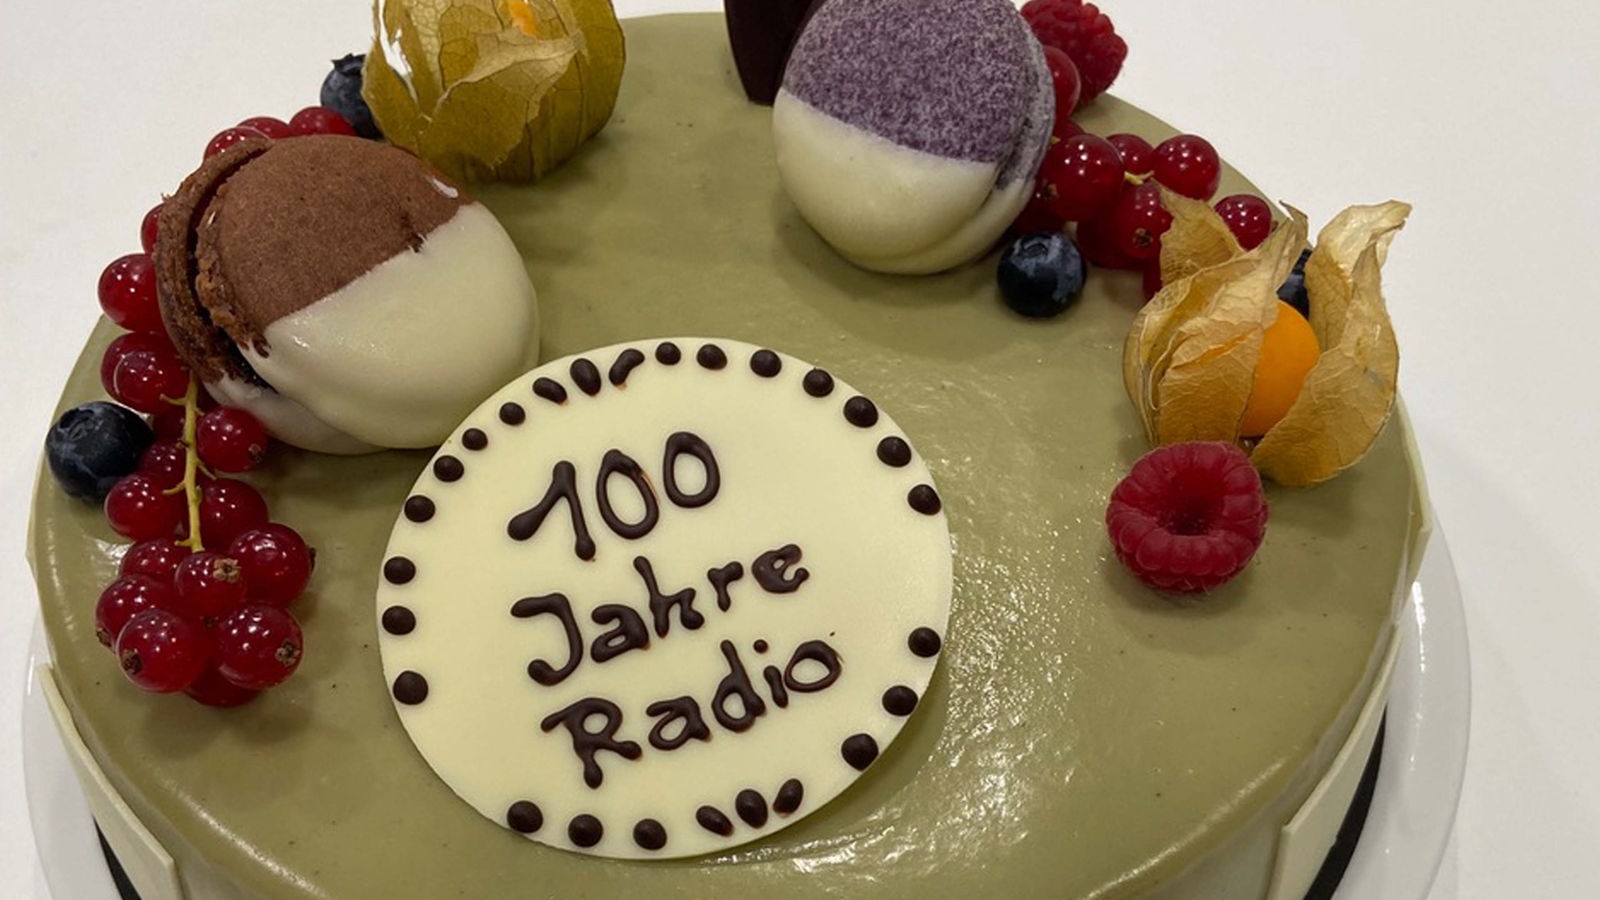 Eine verzierte Torte mit dem Schriftzug "100 Jahre Radio".